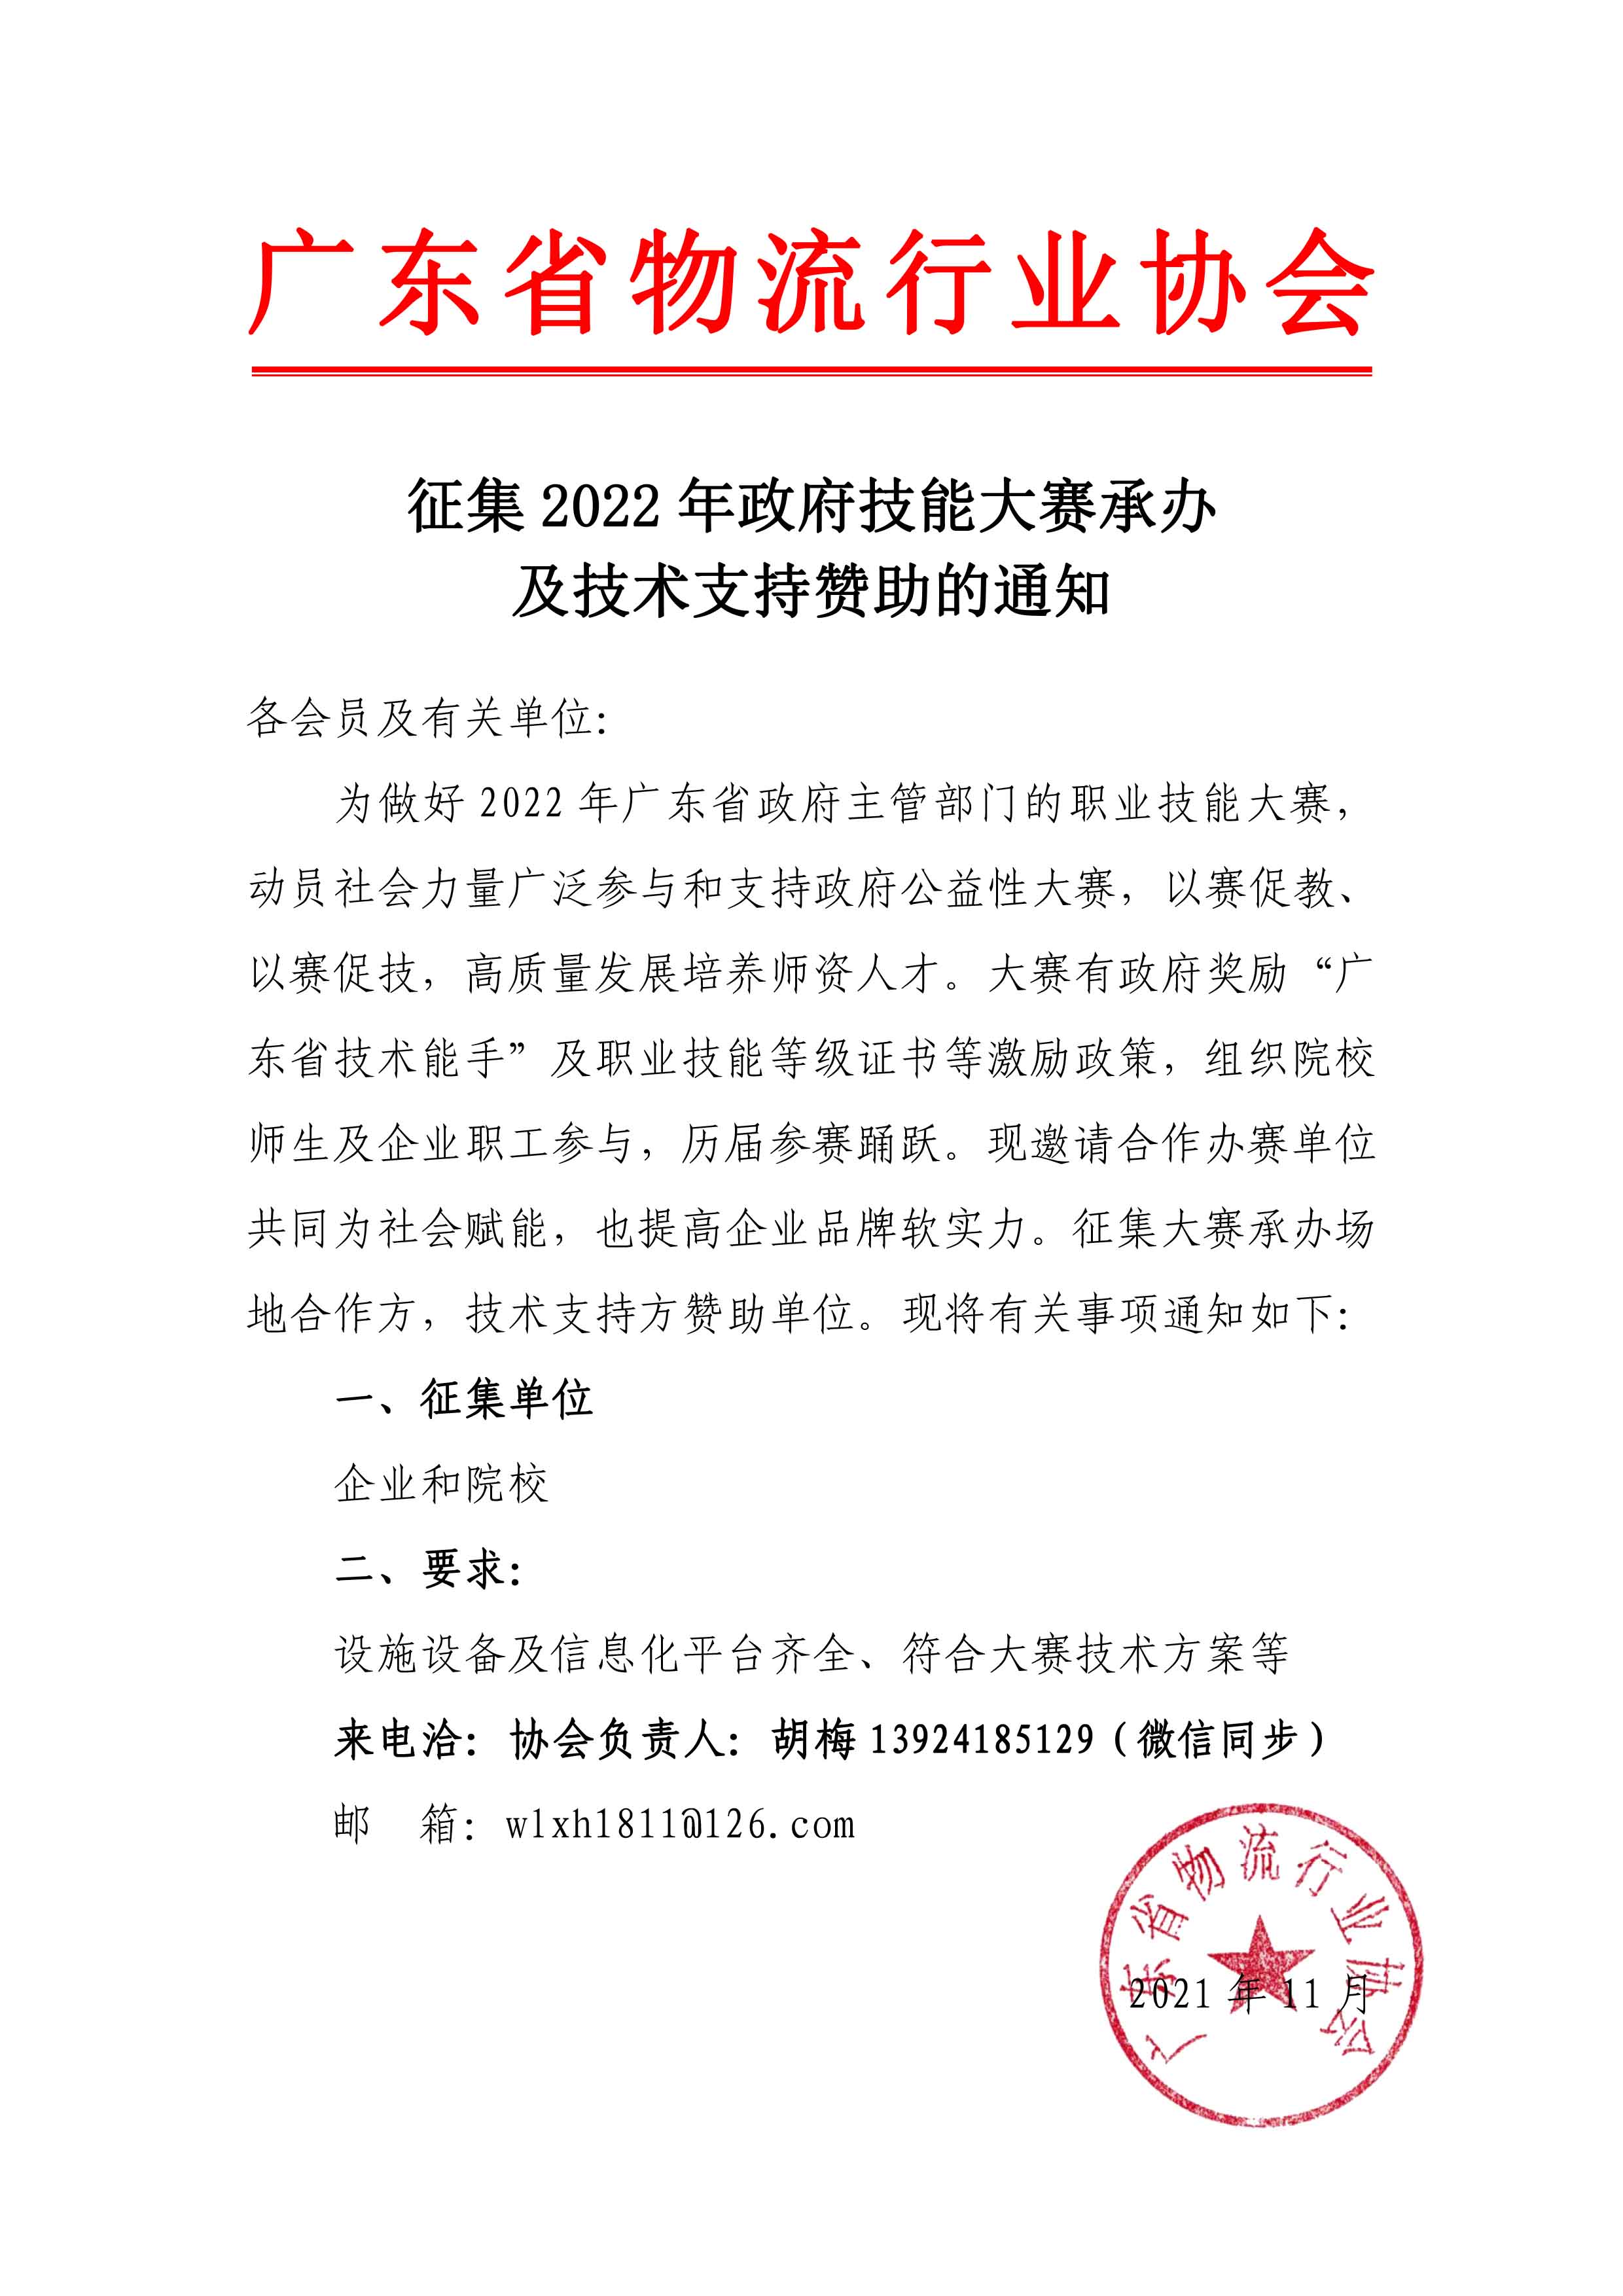 2022年大赛征集承办及技术支持赞助单位11.23.jpg